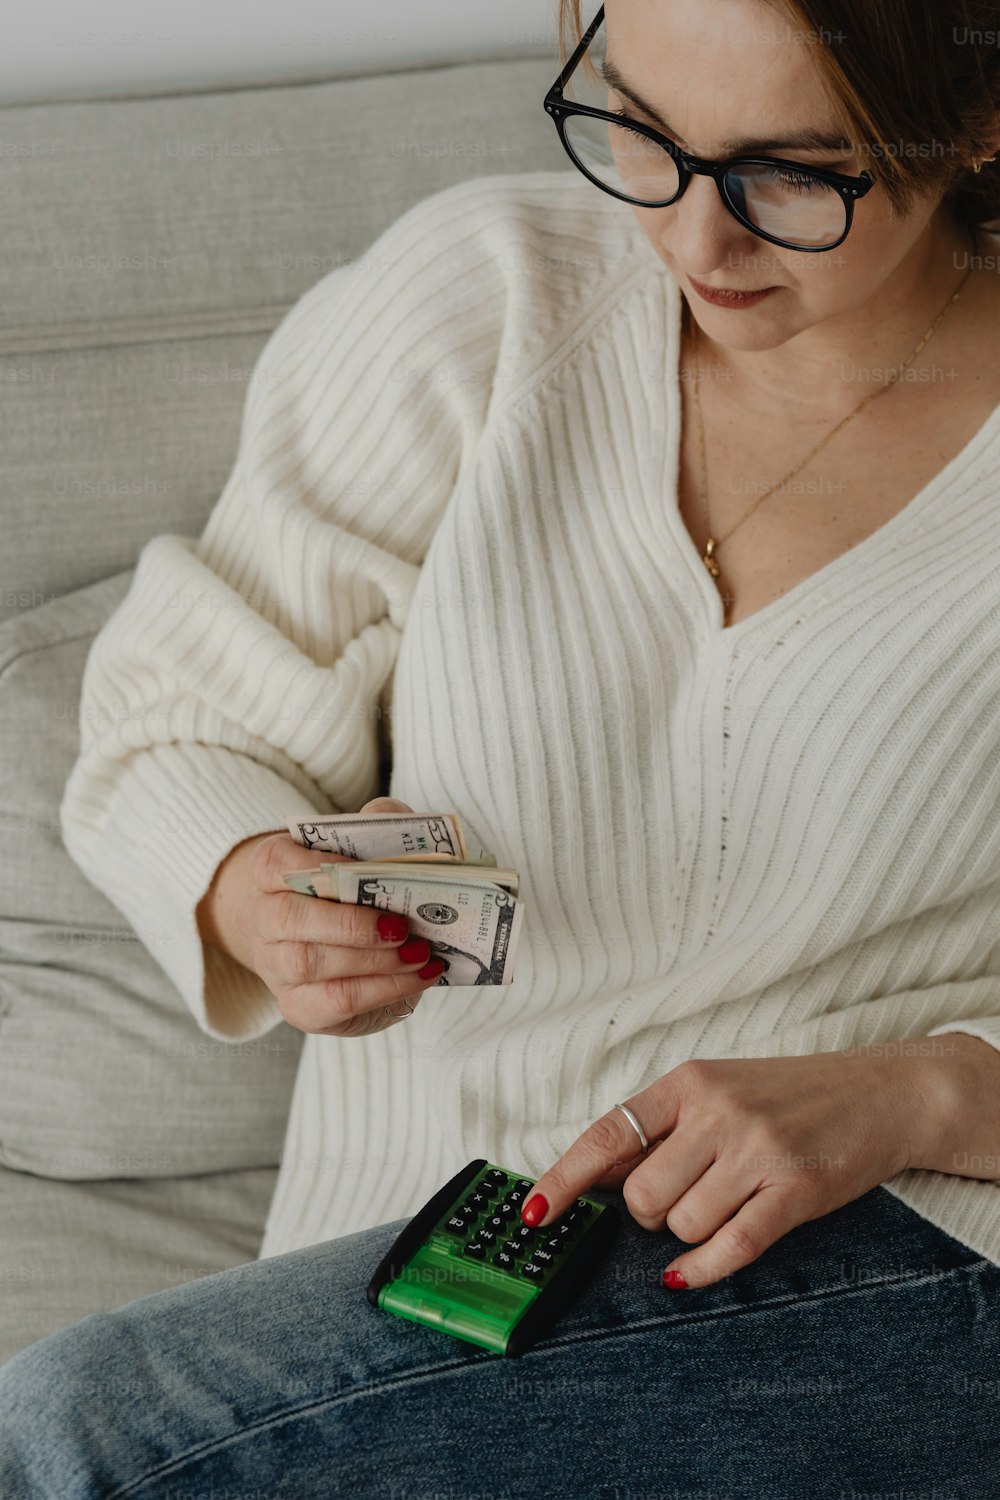 Eine Frau, die auf einer Couch sitzt und Geld und ein Handy in der Hand hält